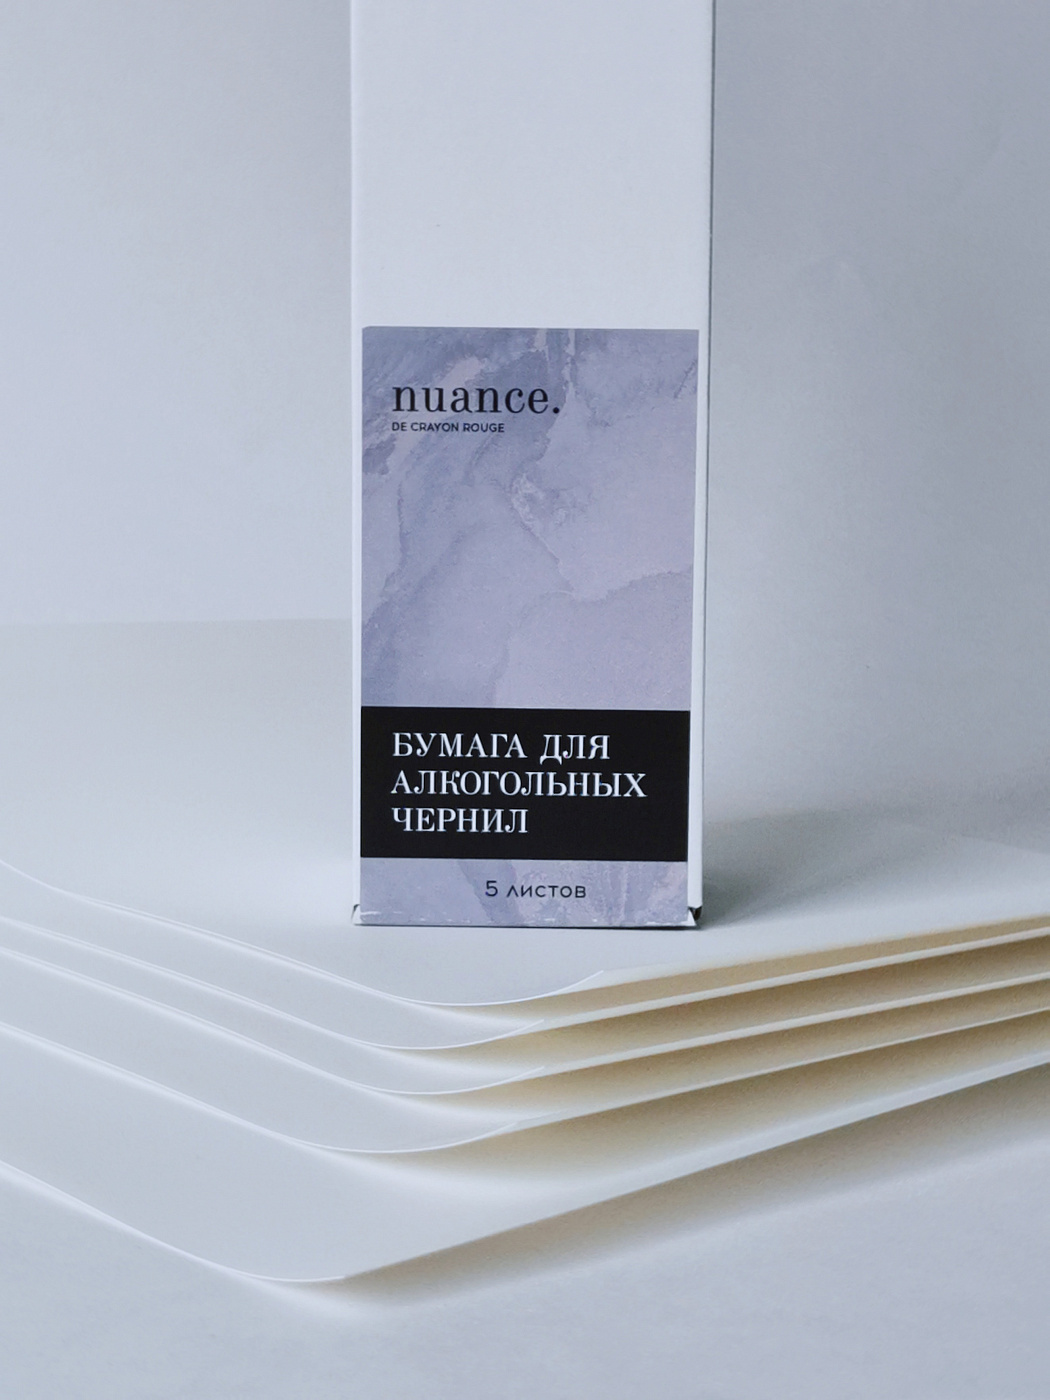 Набор бумаги синтетической (для алкогольных чернил), nuance., 23 х 35 см, 5 листов набор ной бумаги 10 листов 20 ов а4